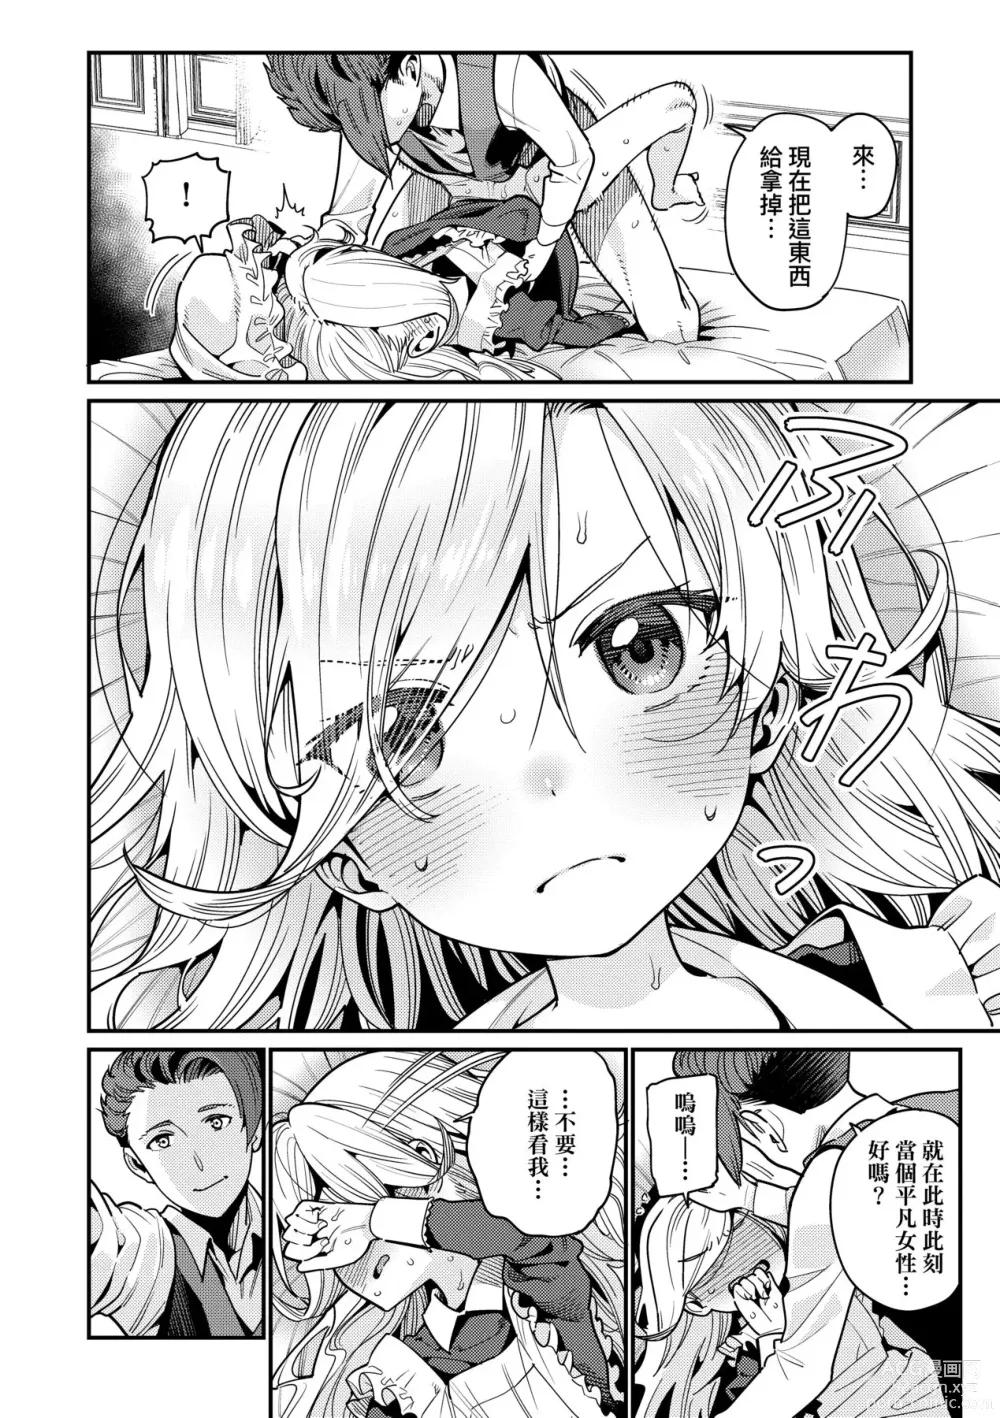 Page 19 of manga Itoshiki Wagaya (decensored)